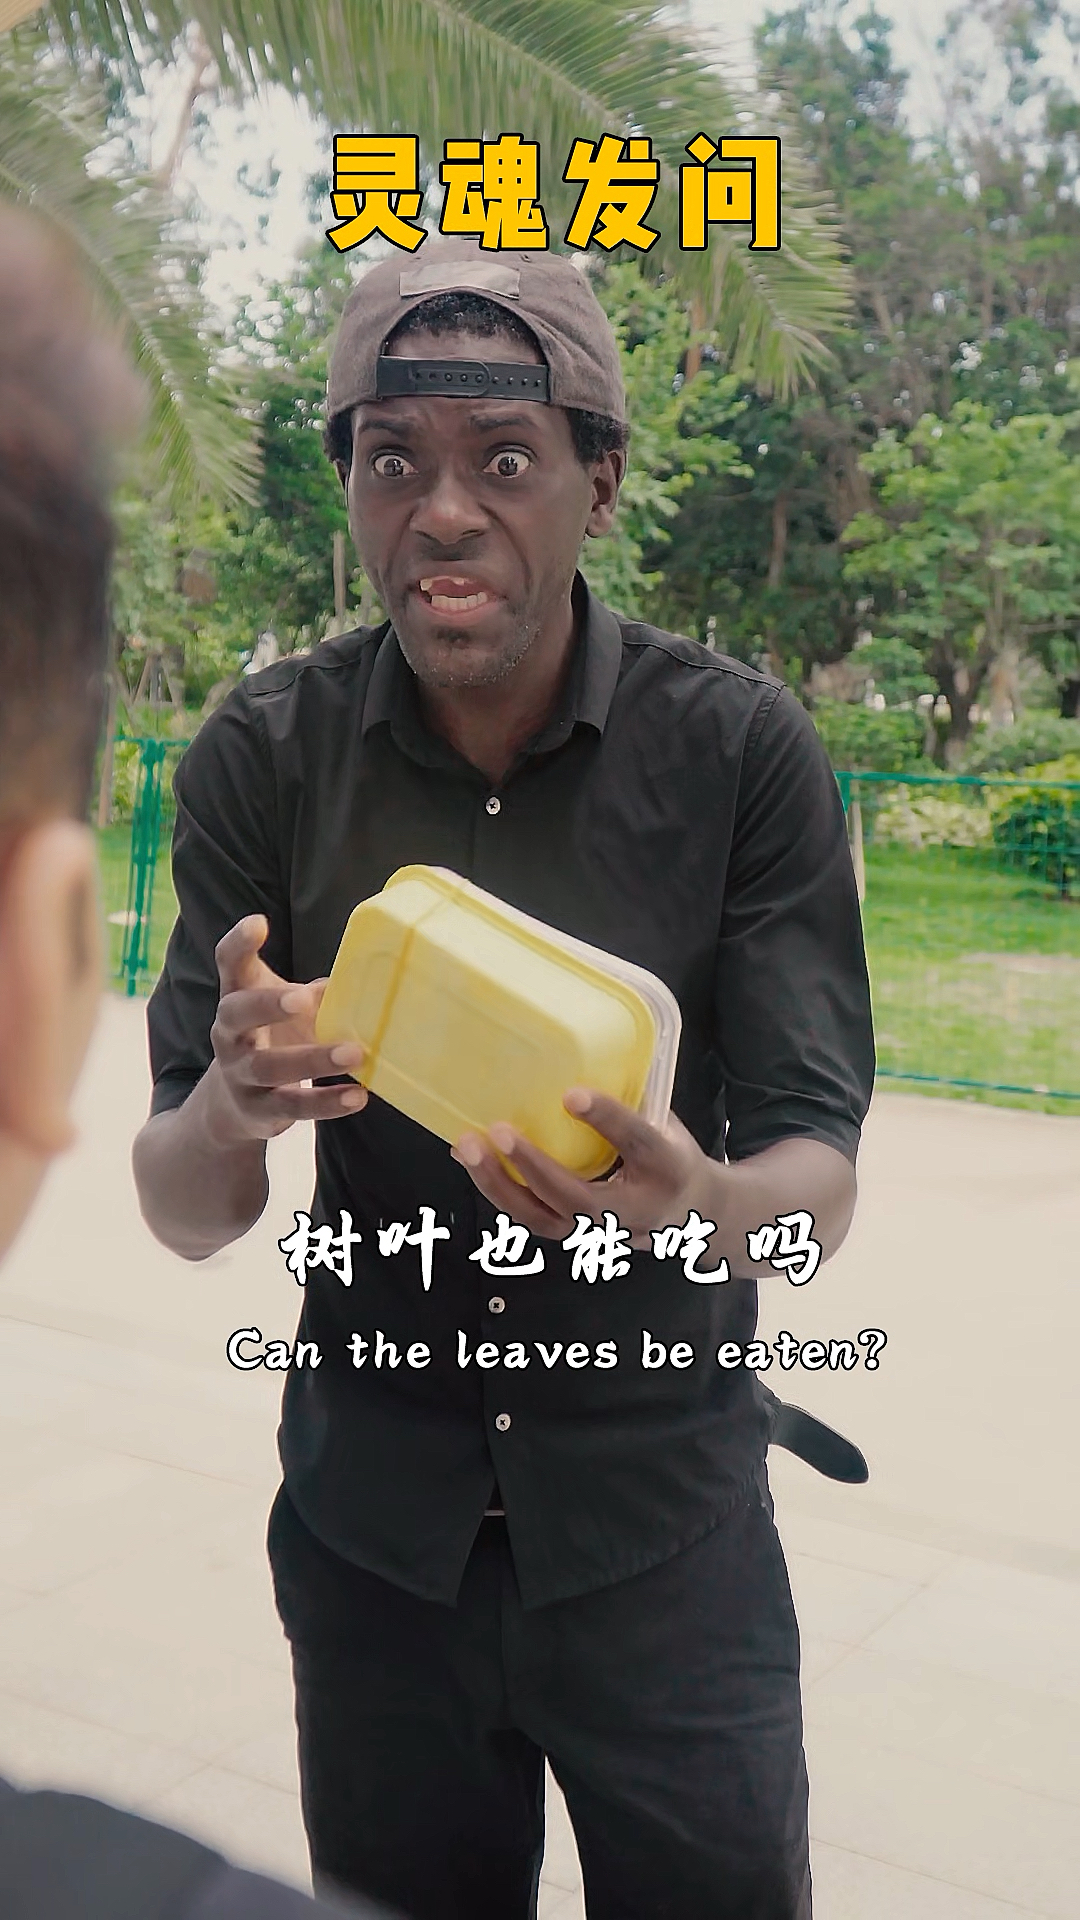 搞笑段子剧当我来中国第一次吃粽子没想到竟是这种感觉